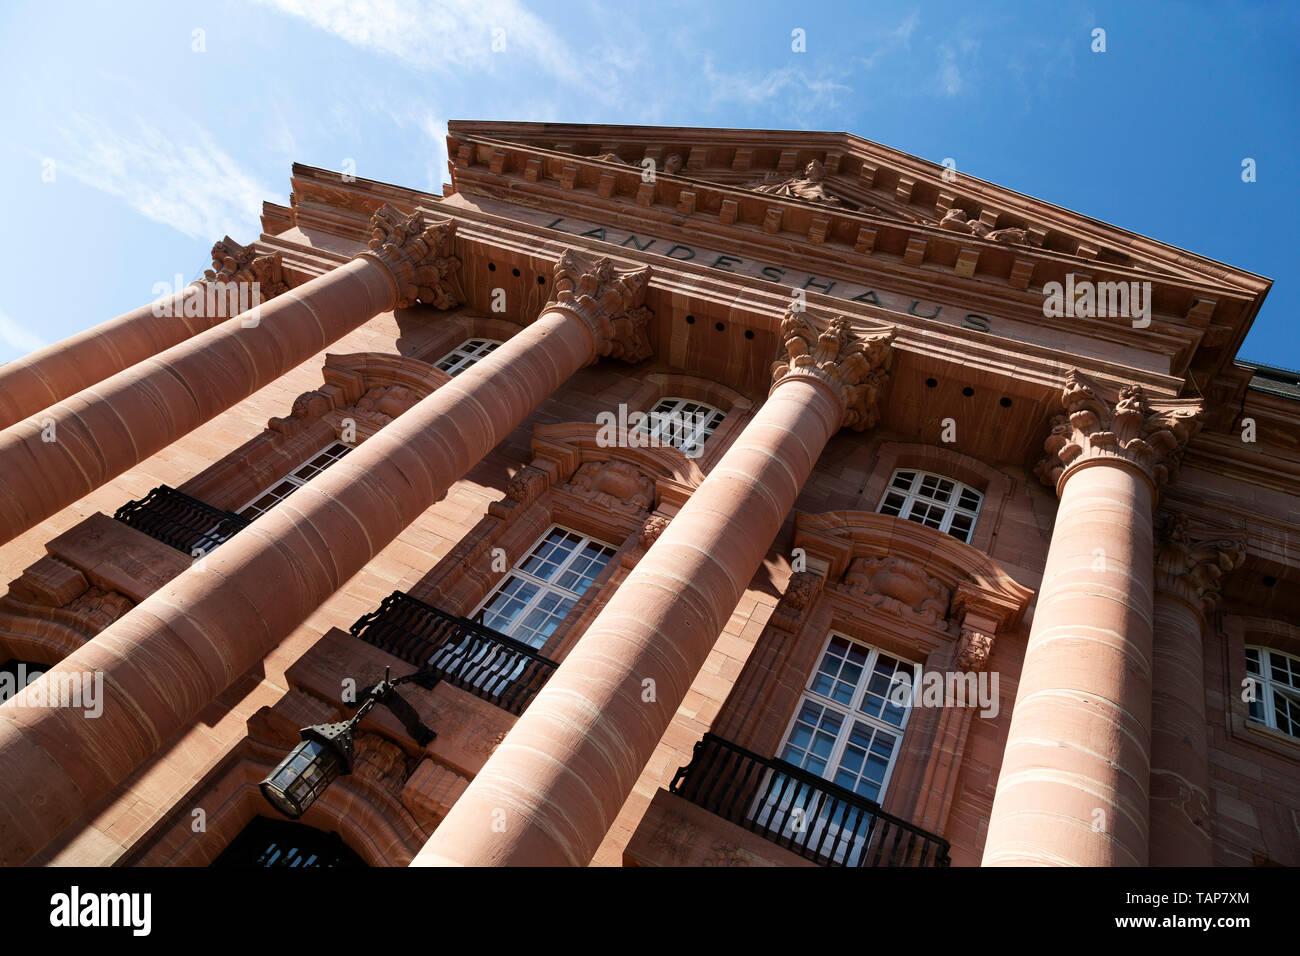 La Landeshaus en Wiesbaden, la capital del estado de Hesse, Alemania. Foto de stock